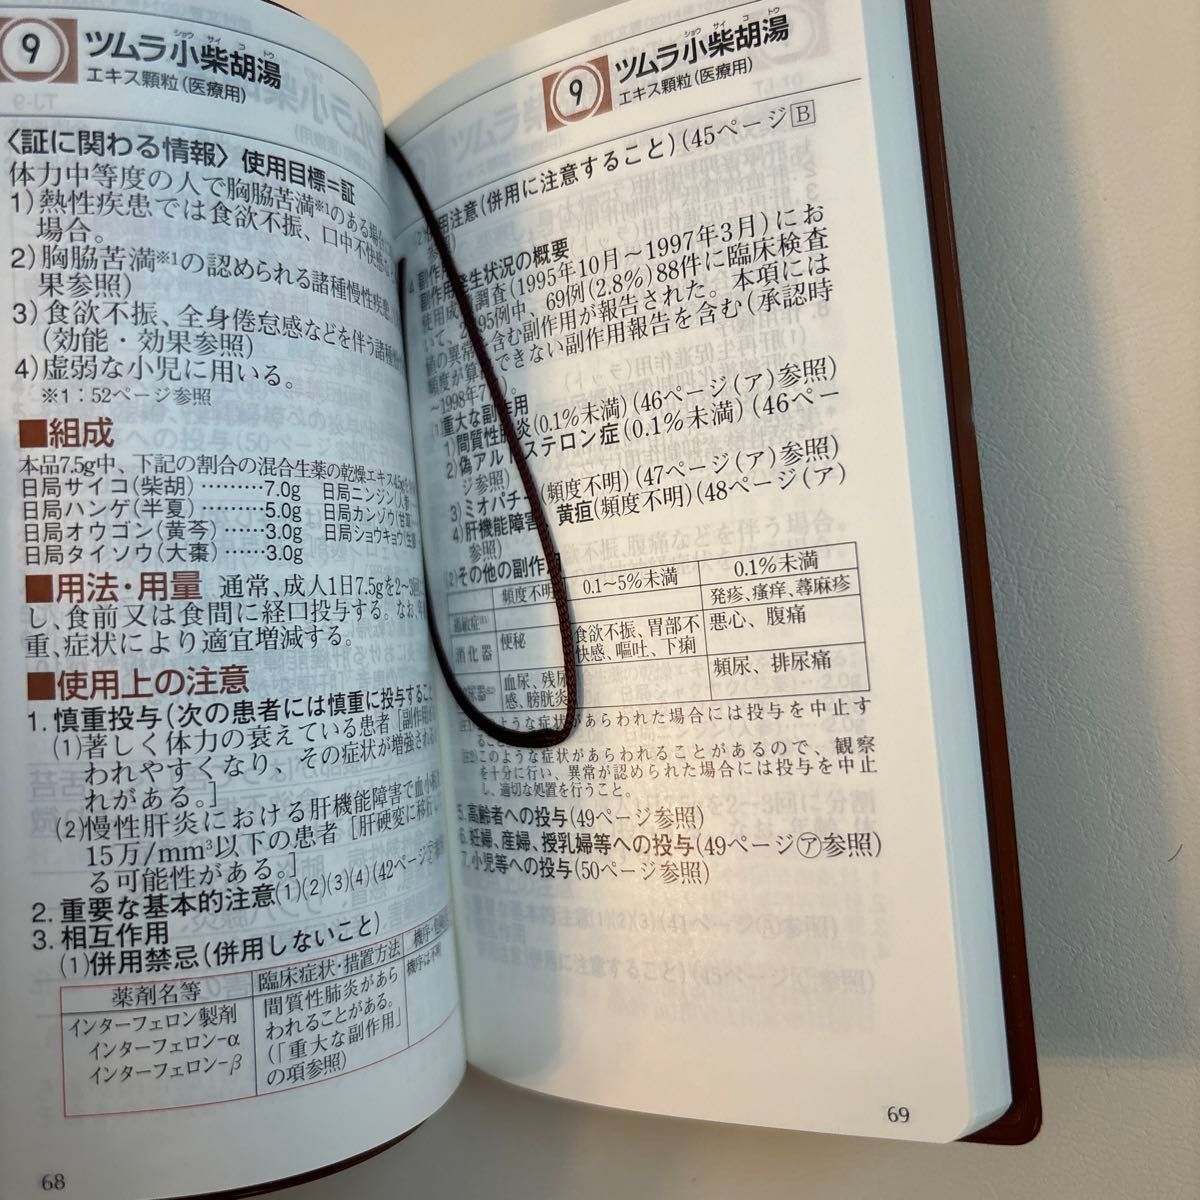 ツムラ 医療用漢方製剤 ハンドブック未使用 漢方手帳